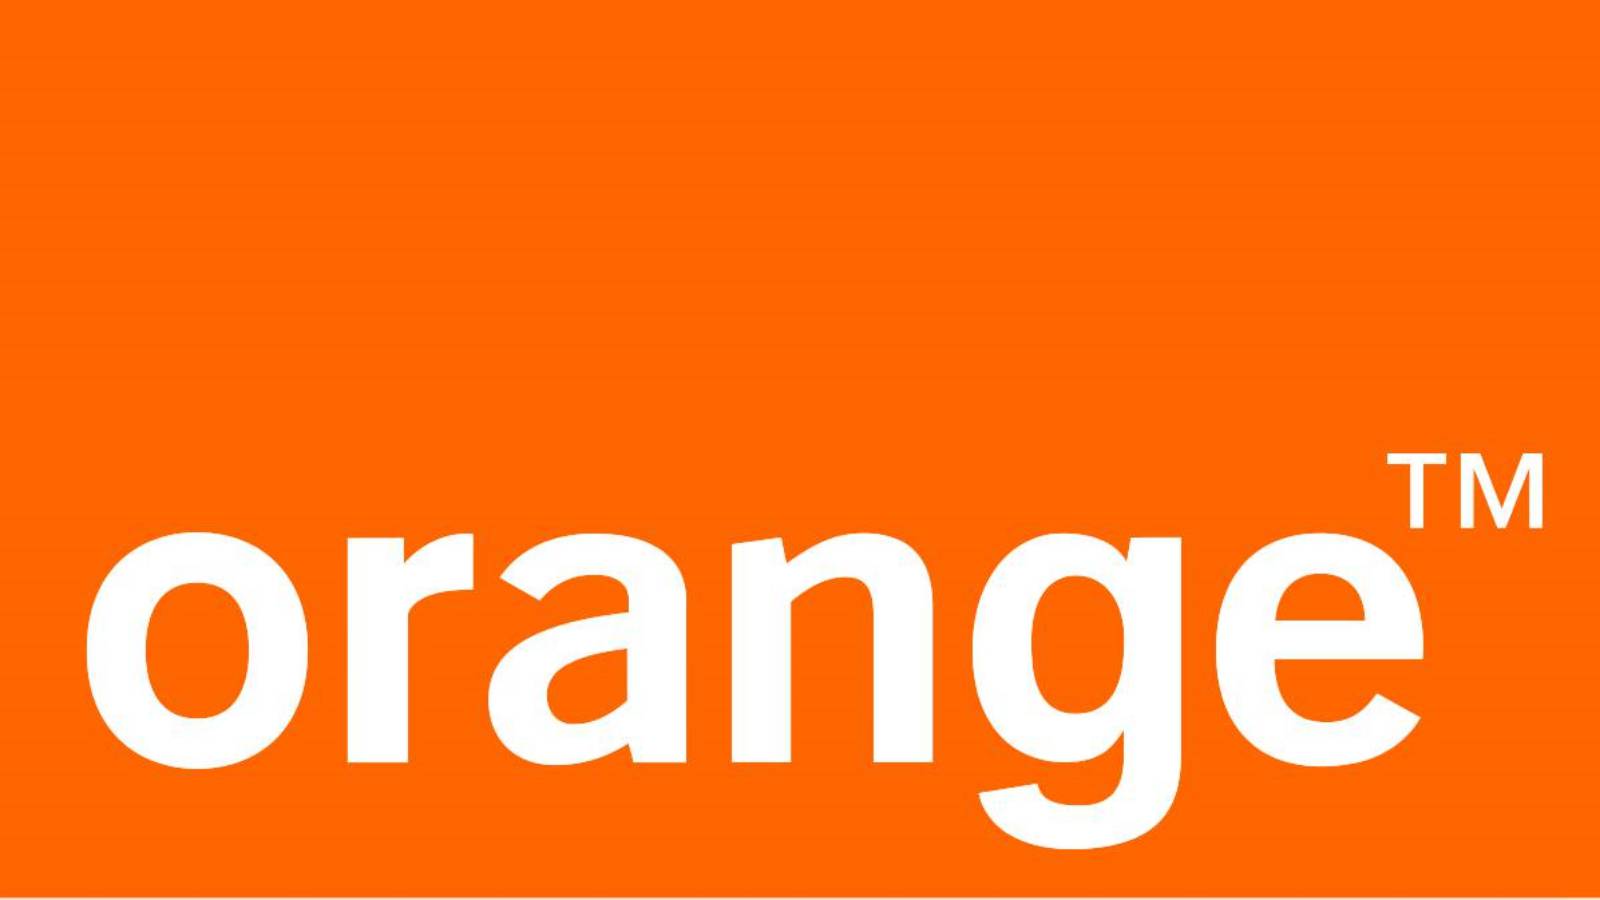 Orange alerta esim